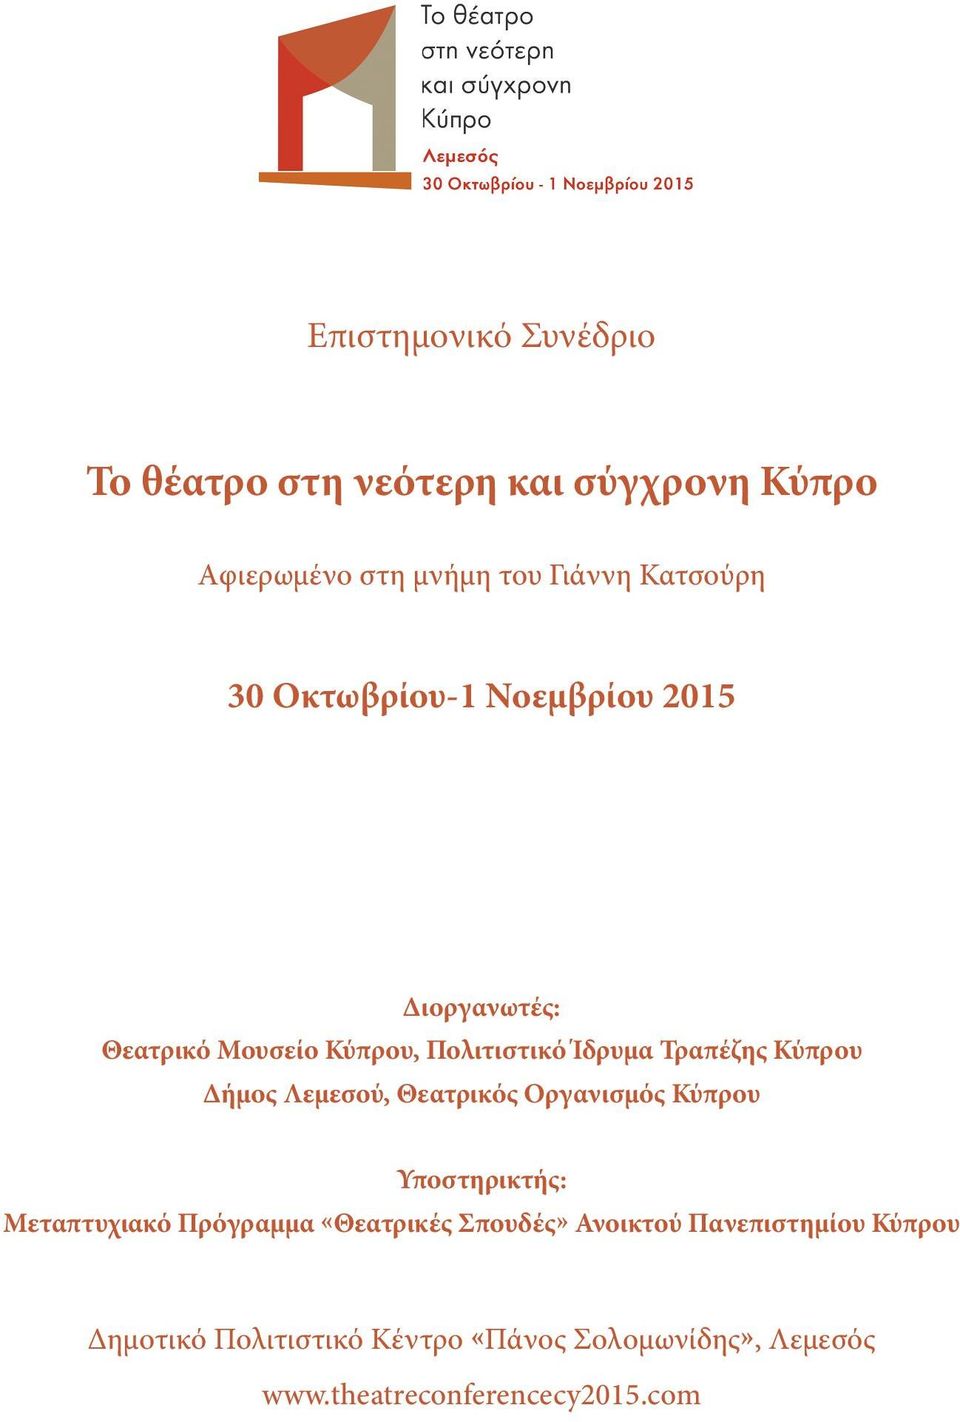 Λεμεσού, Θεατρικός Οργανισμός Κύπρου Υποστηρικτής: Μεταπτυχιακό Πρόγραμμα «Θεατρικές Σπουδές» Ανοικτού